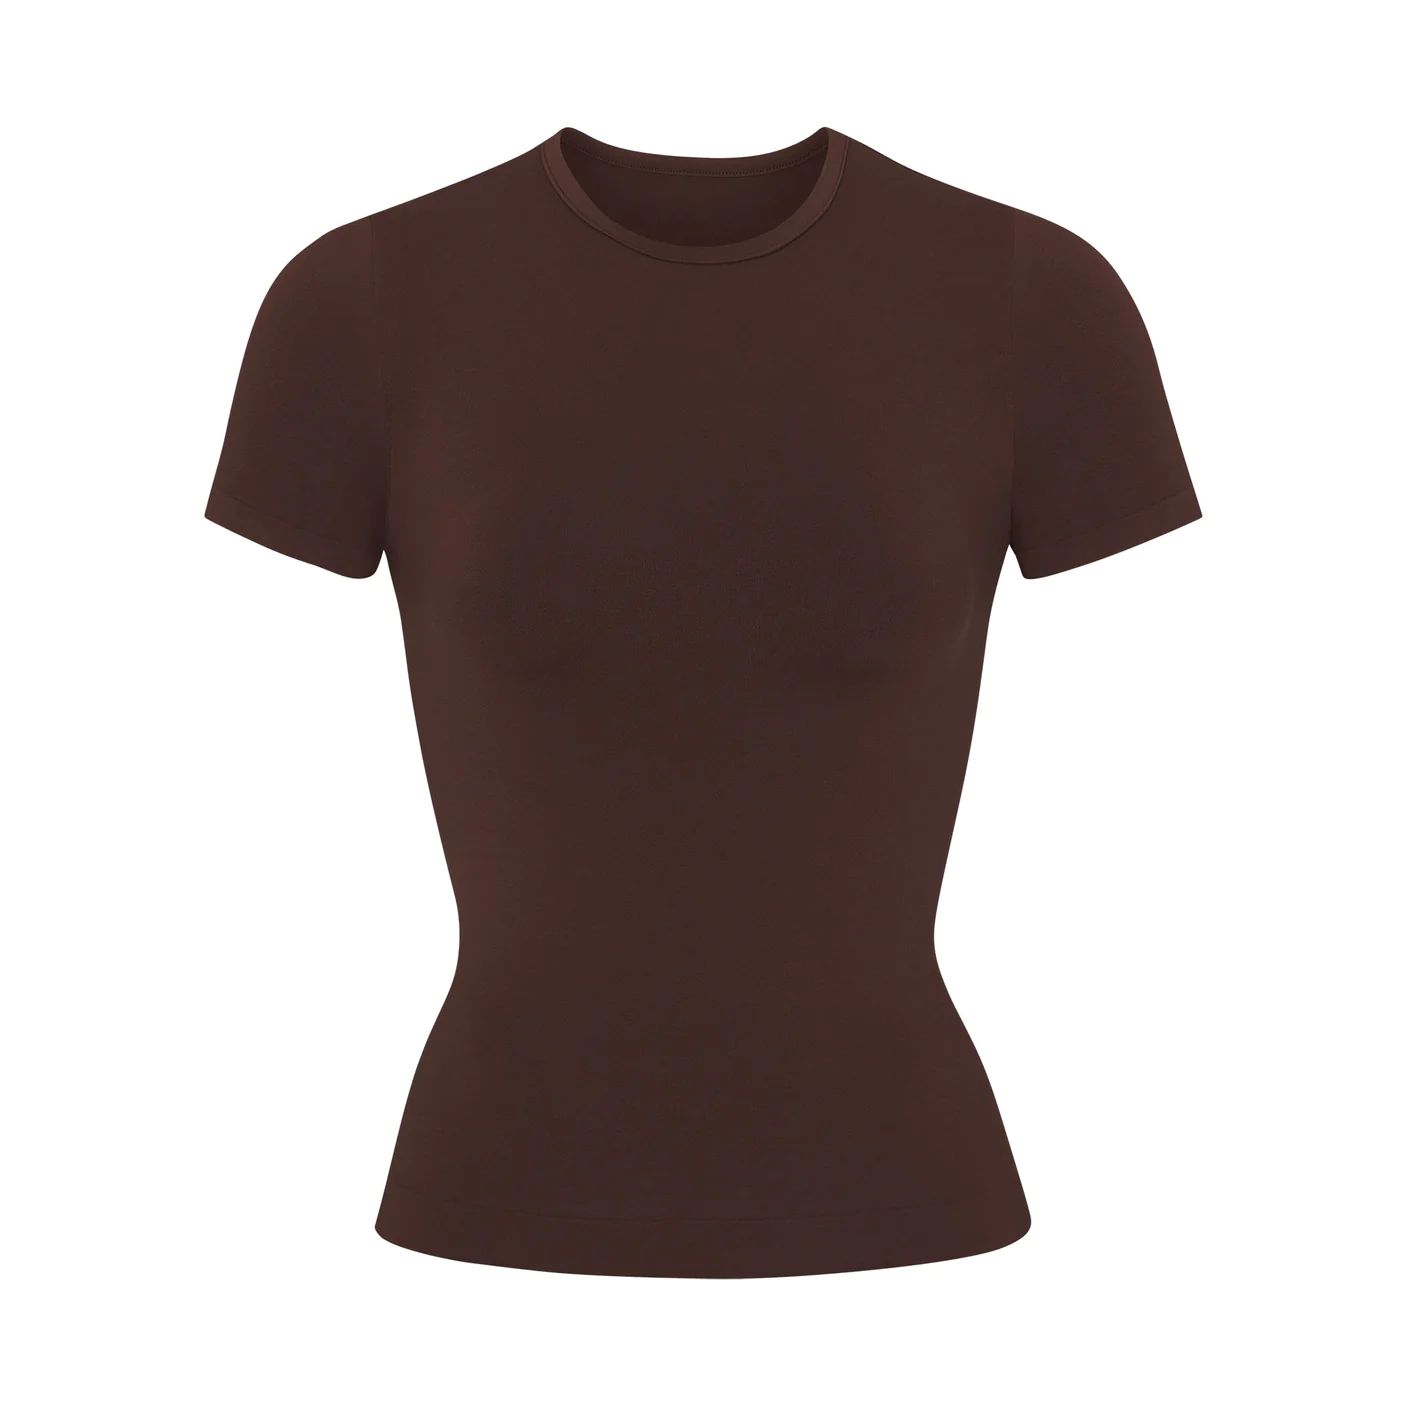 Soft Smoothing T-Shirt - Cocoa | SKIMS | SKIMS (US)